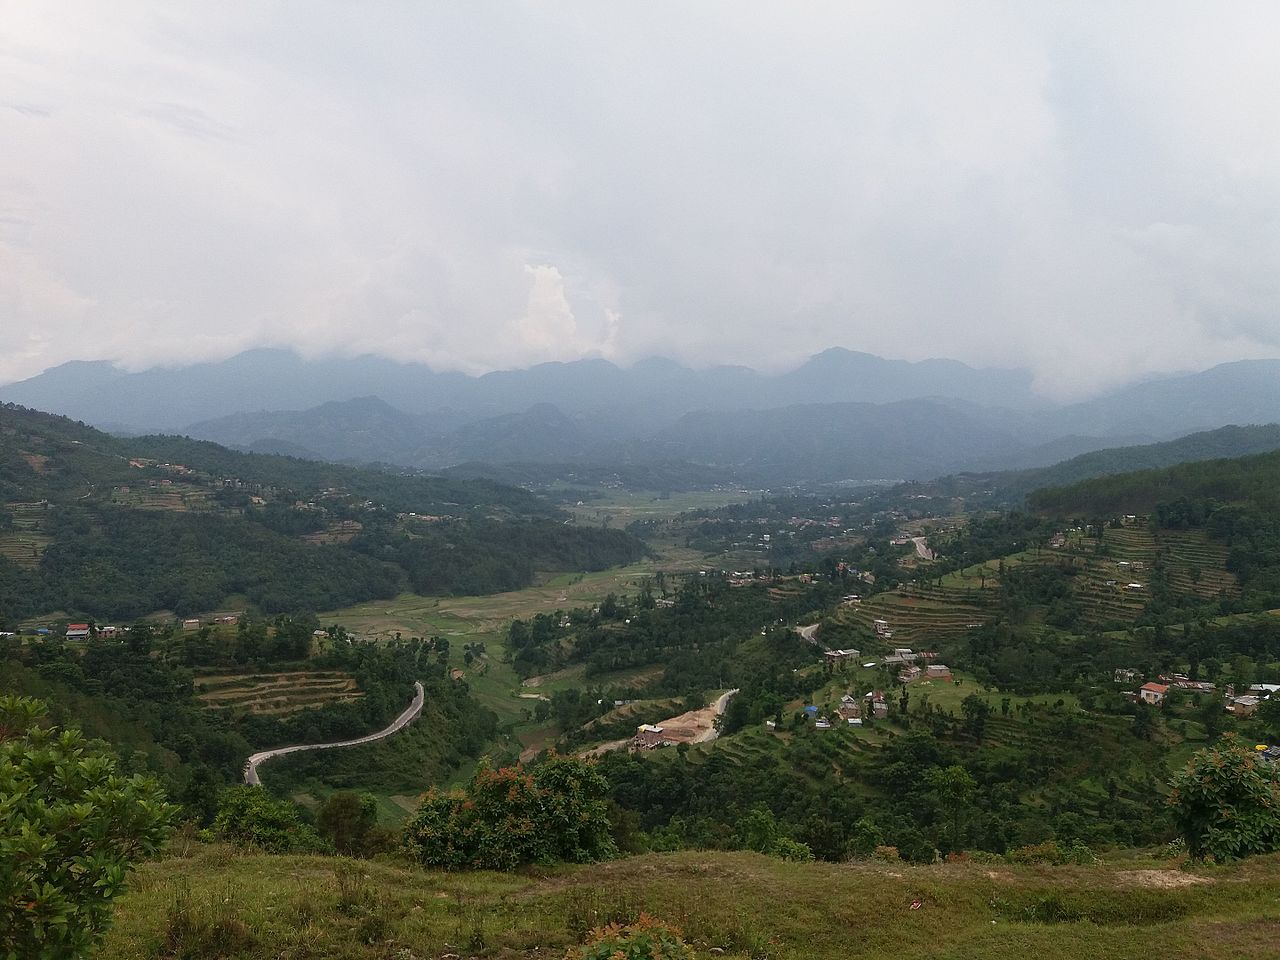 dhulikhel view from Bhati danda